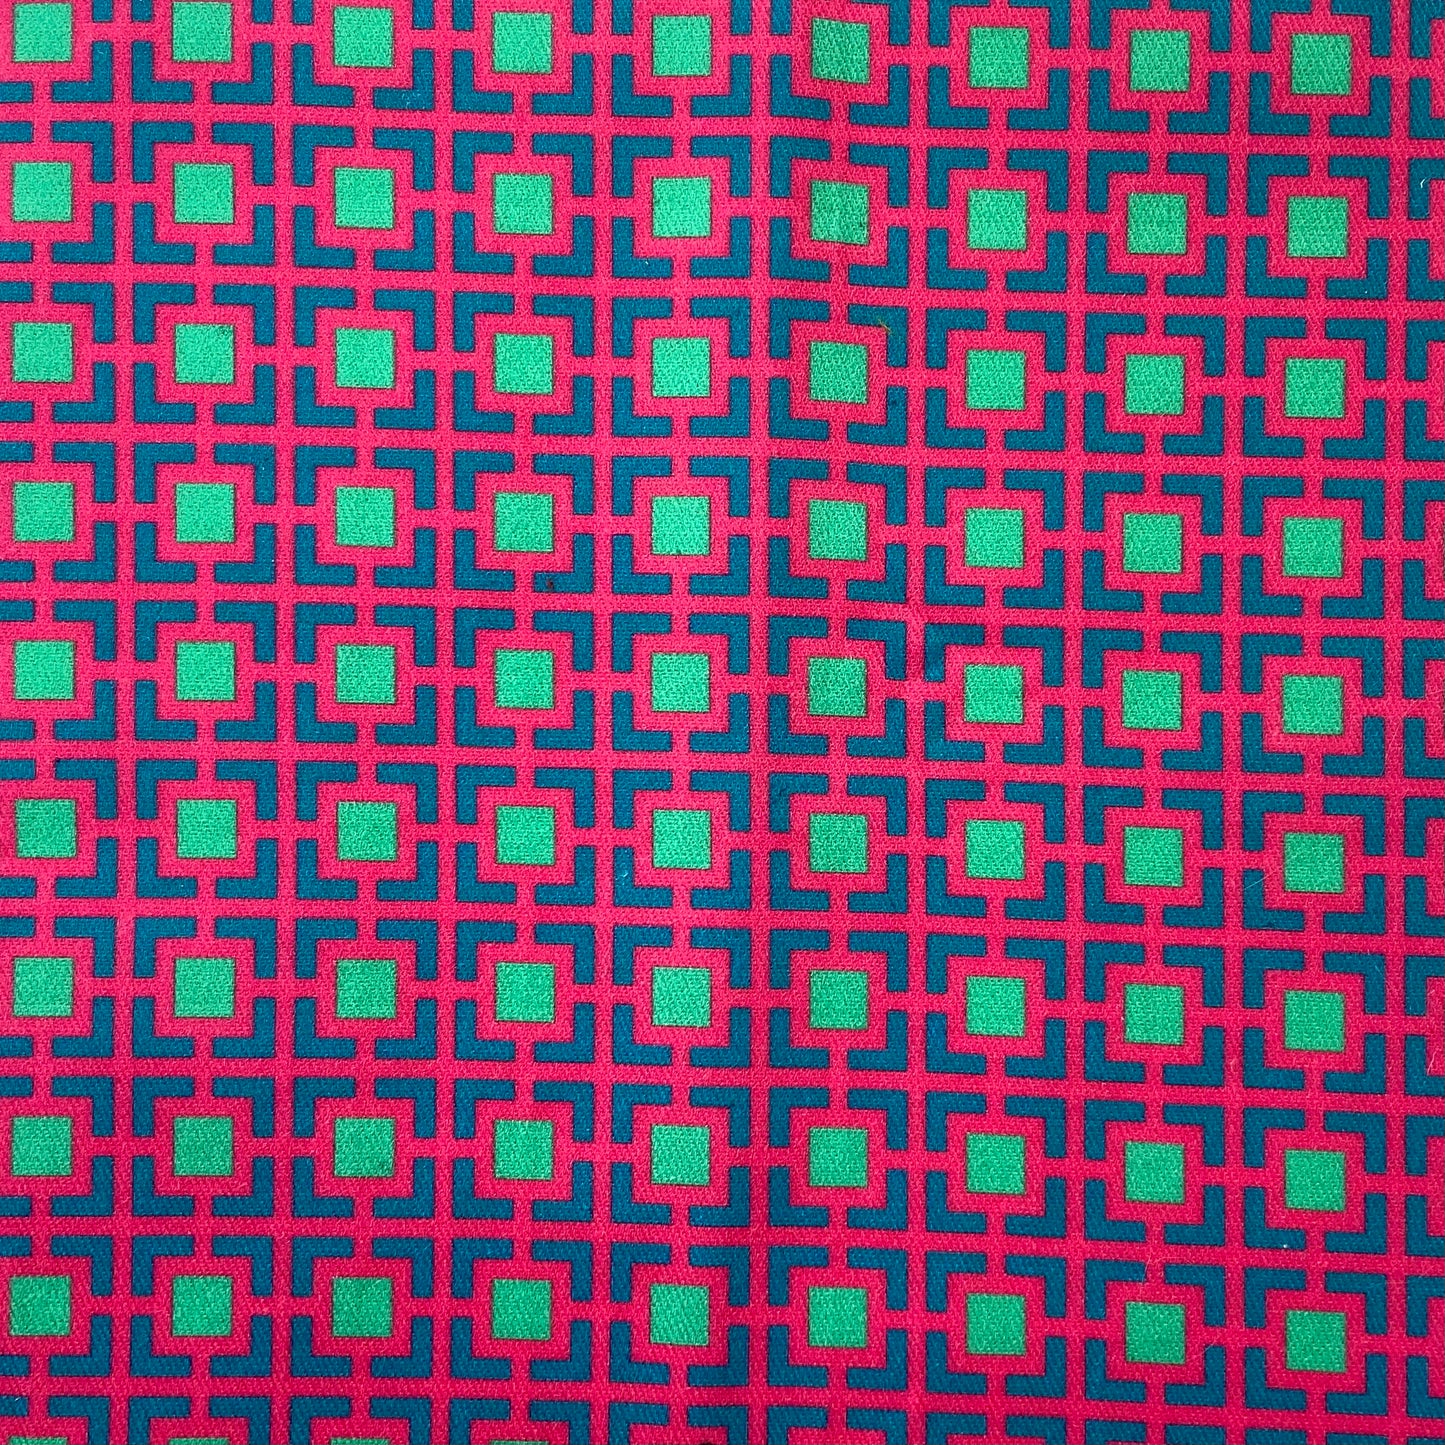 Sergé de coton imprimé motif carrés très colros fuschia bleu canadr paon turquoise vert d'eau contratse géométrique Cour Carrée dessin de jardins symétriques pop flashy rose vif vivid pink 